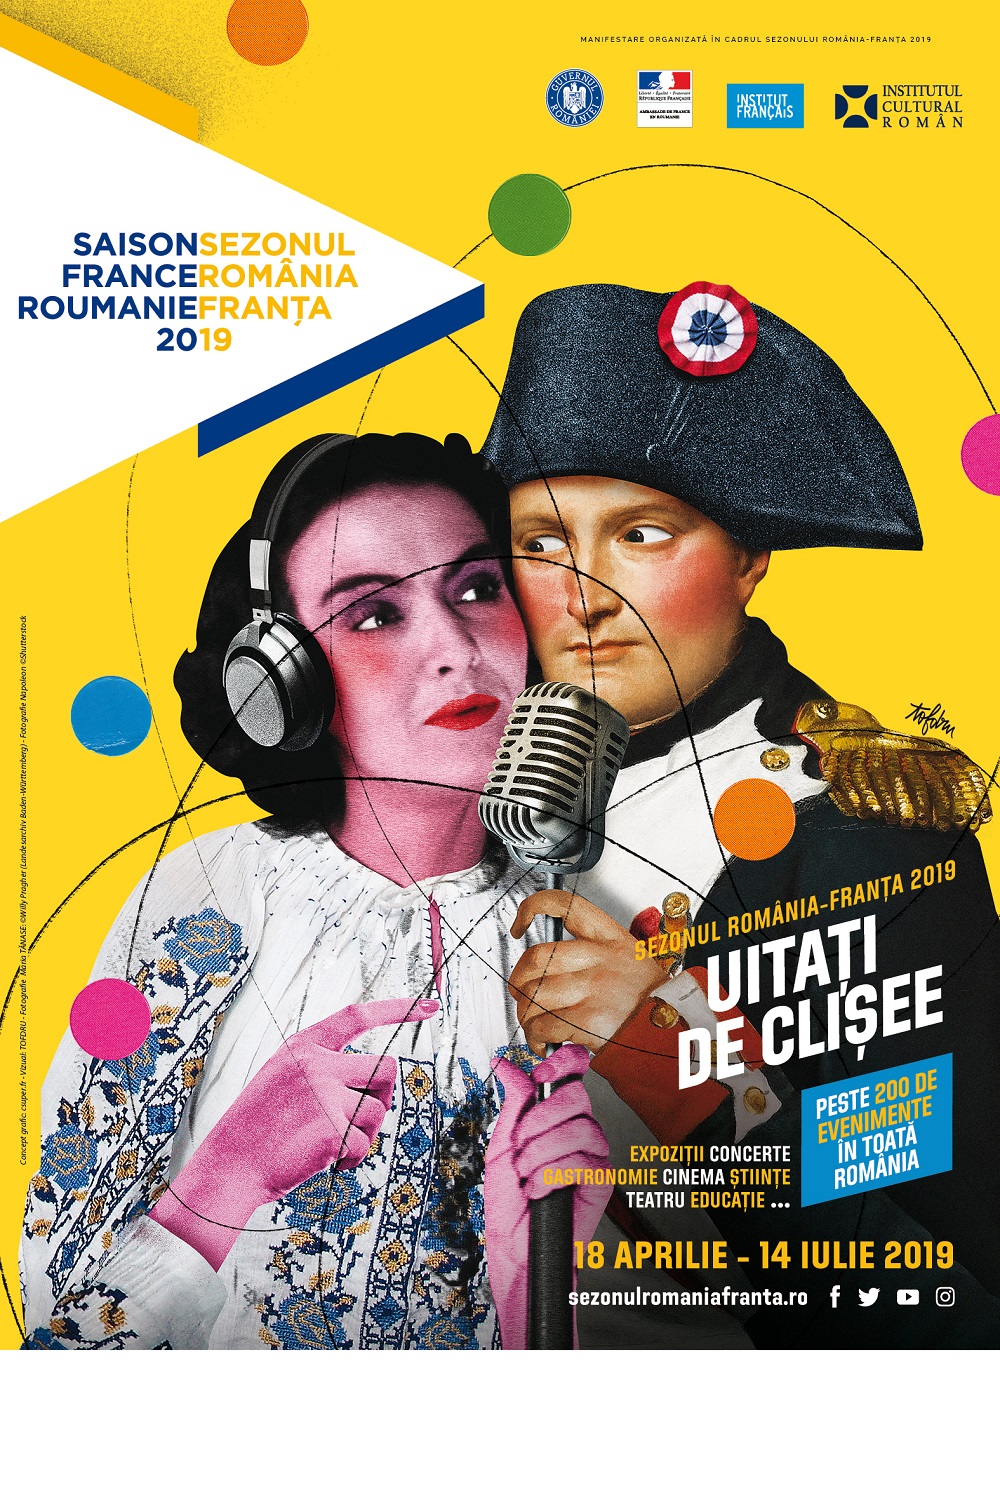 L’affiche roumaine montre Maria Tanase, une chanteuse roumaine populaire, dans les bras de Napoléon.